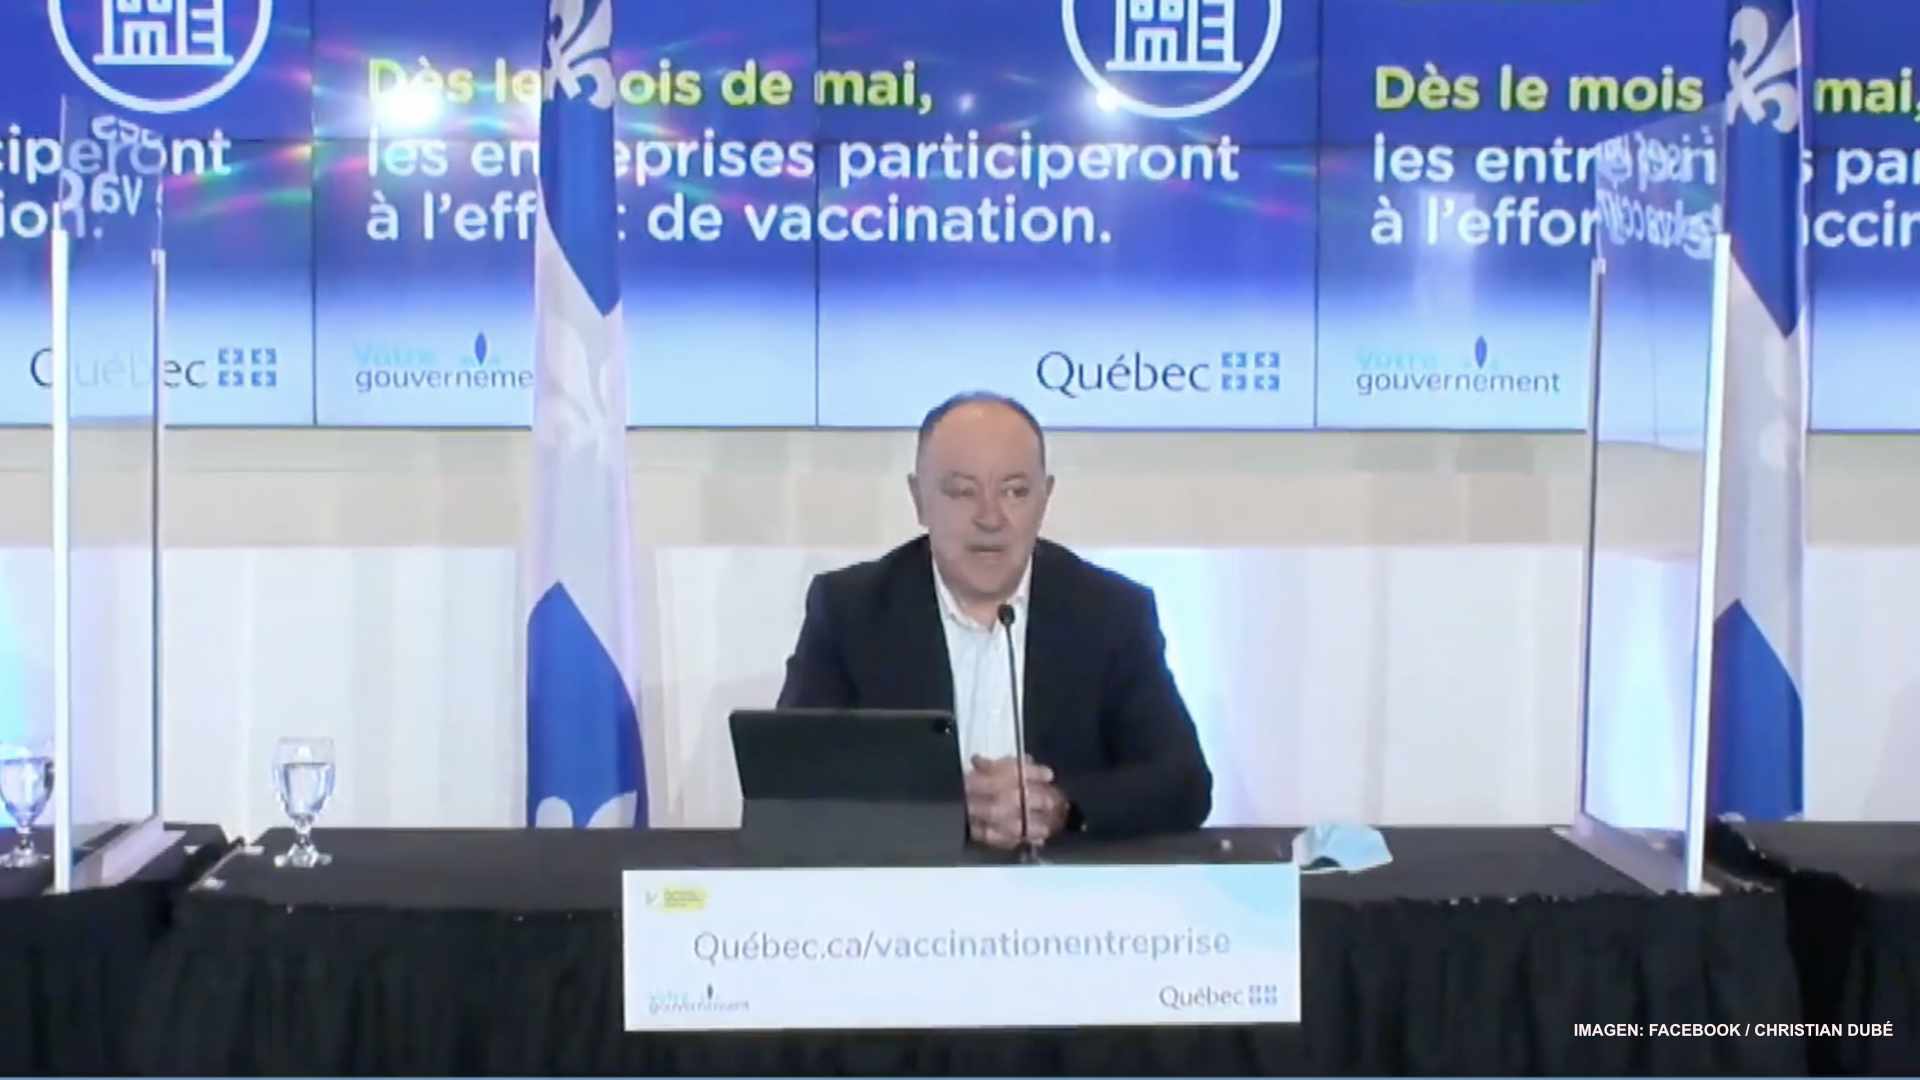 Quebec llama a empresas sumarse a campaña